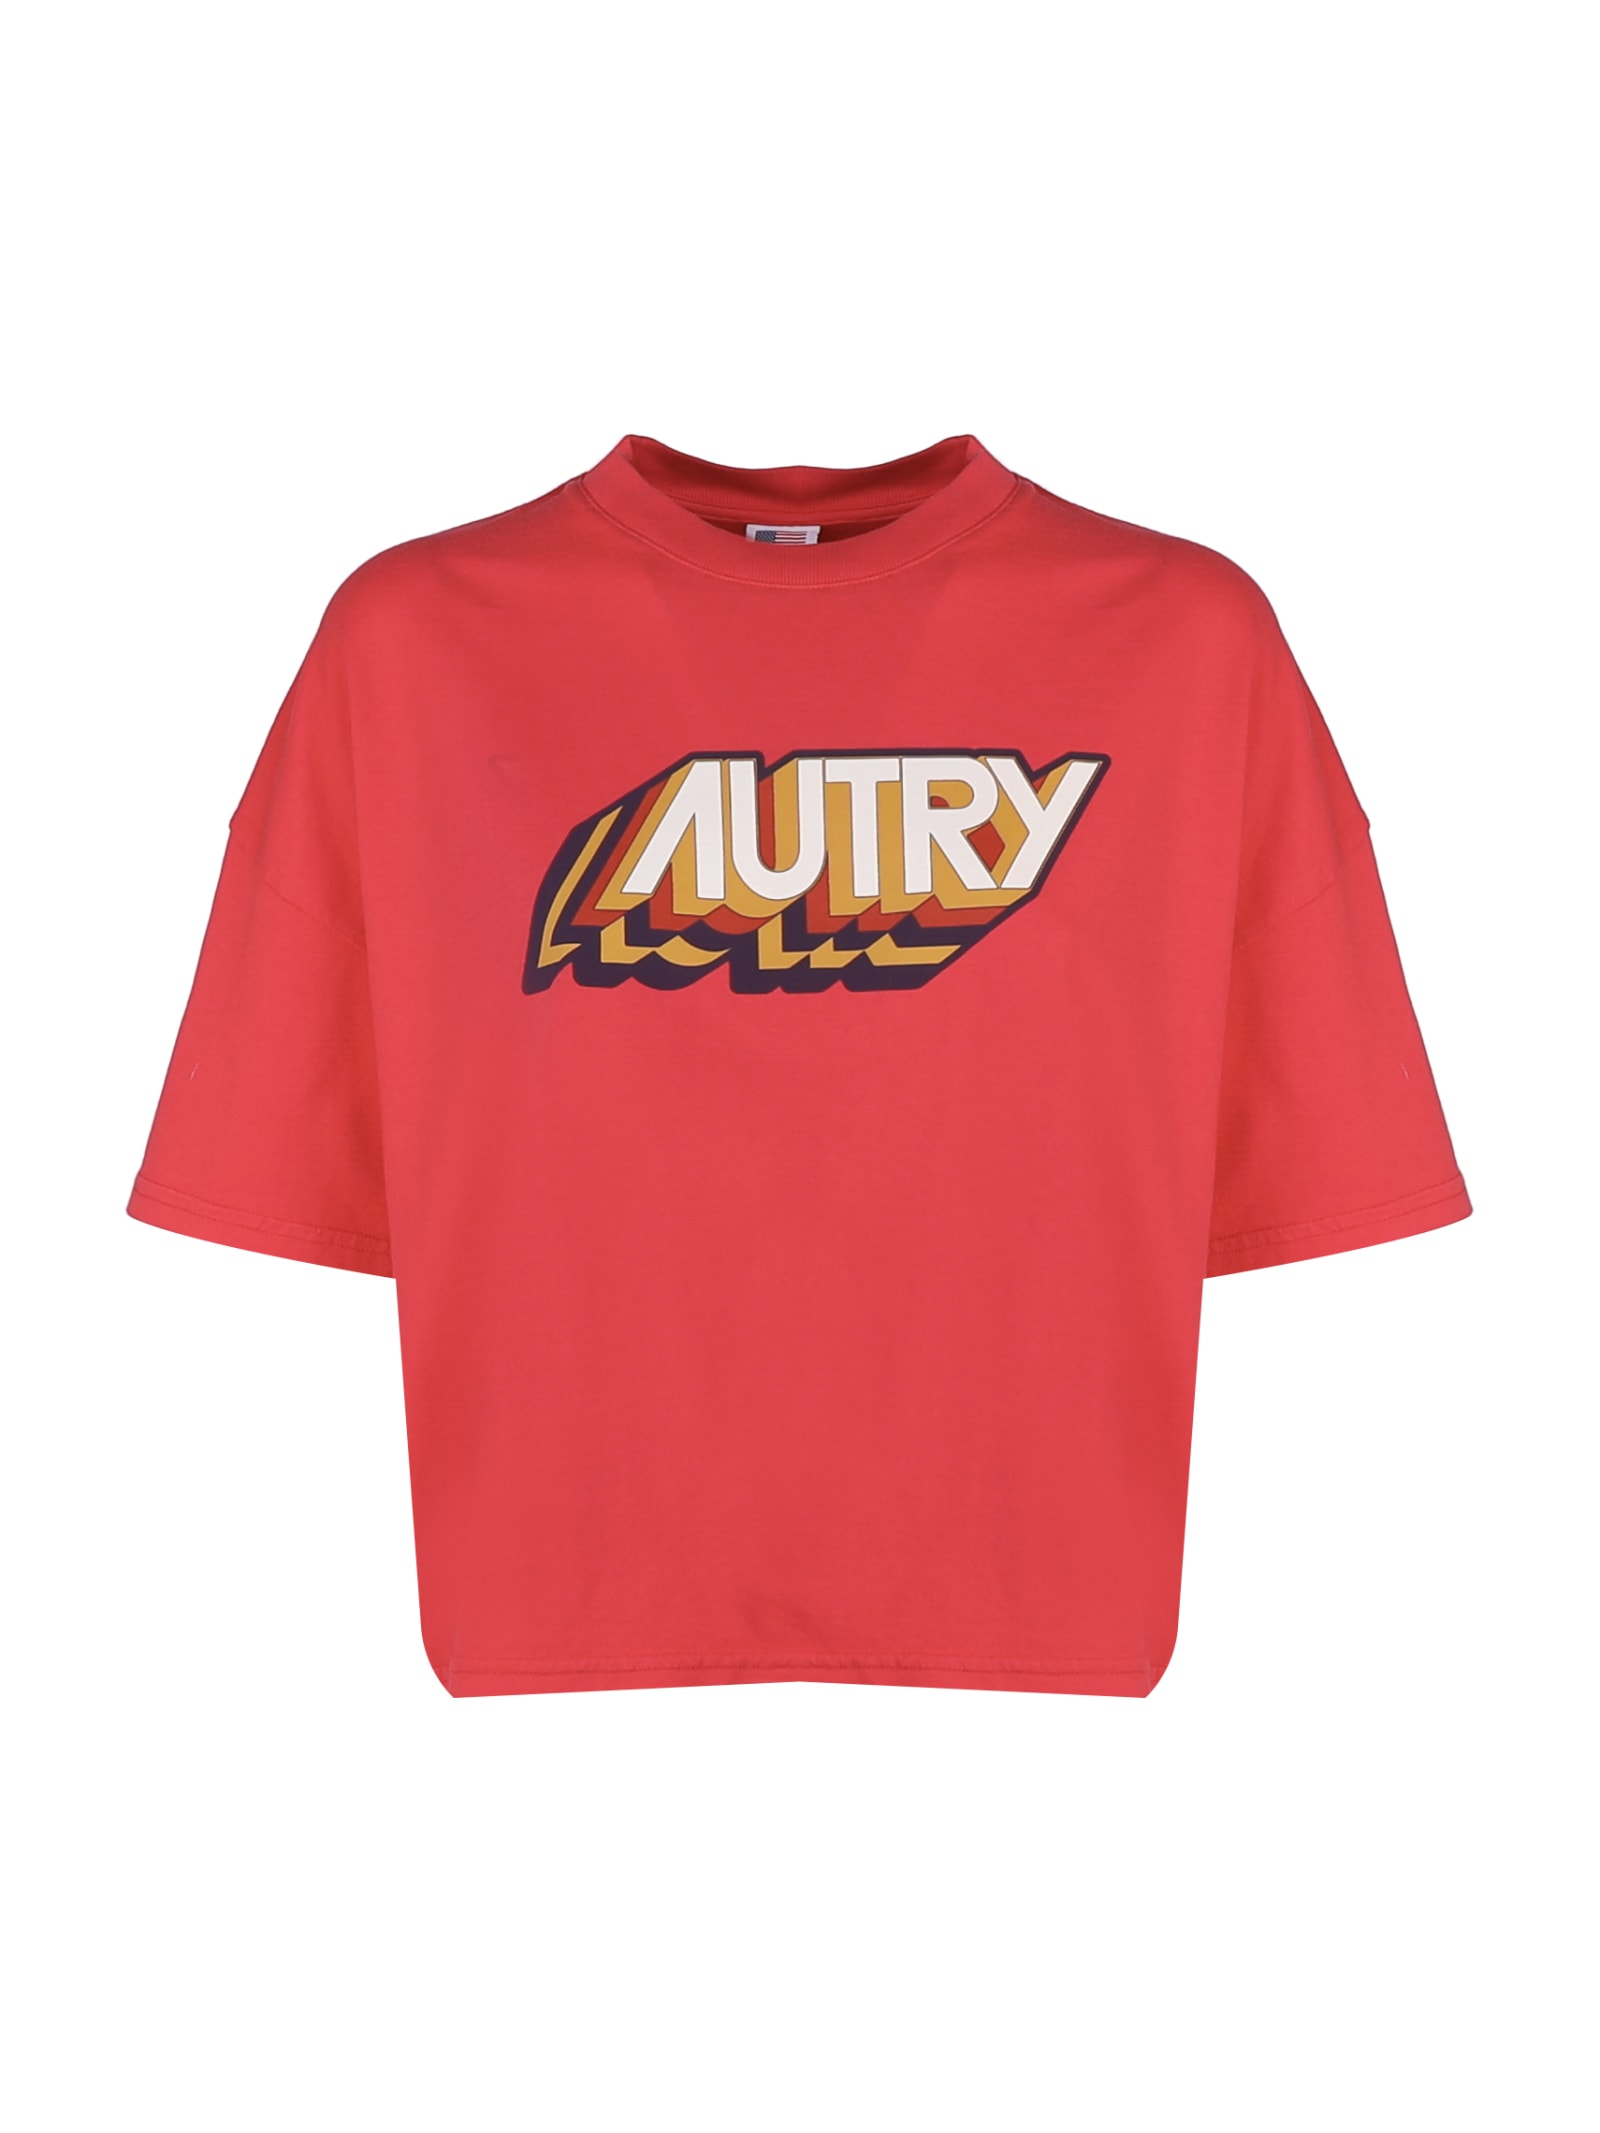 Shop Autry Aerobic T-shirt